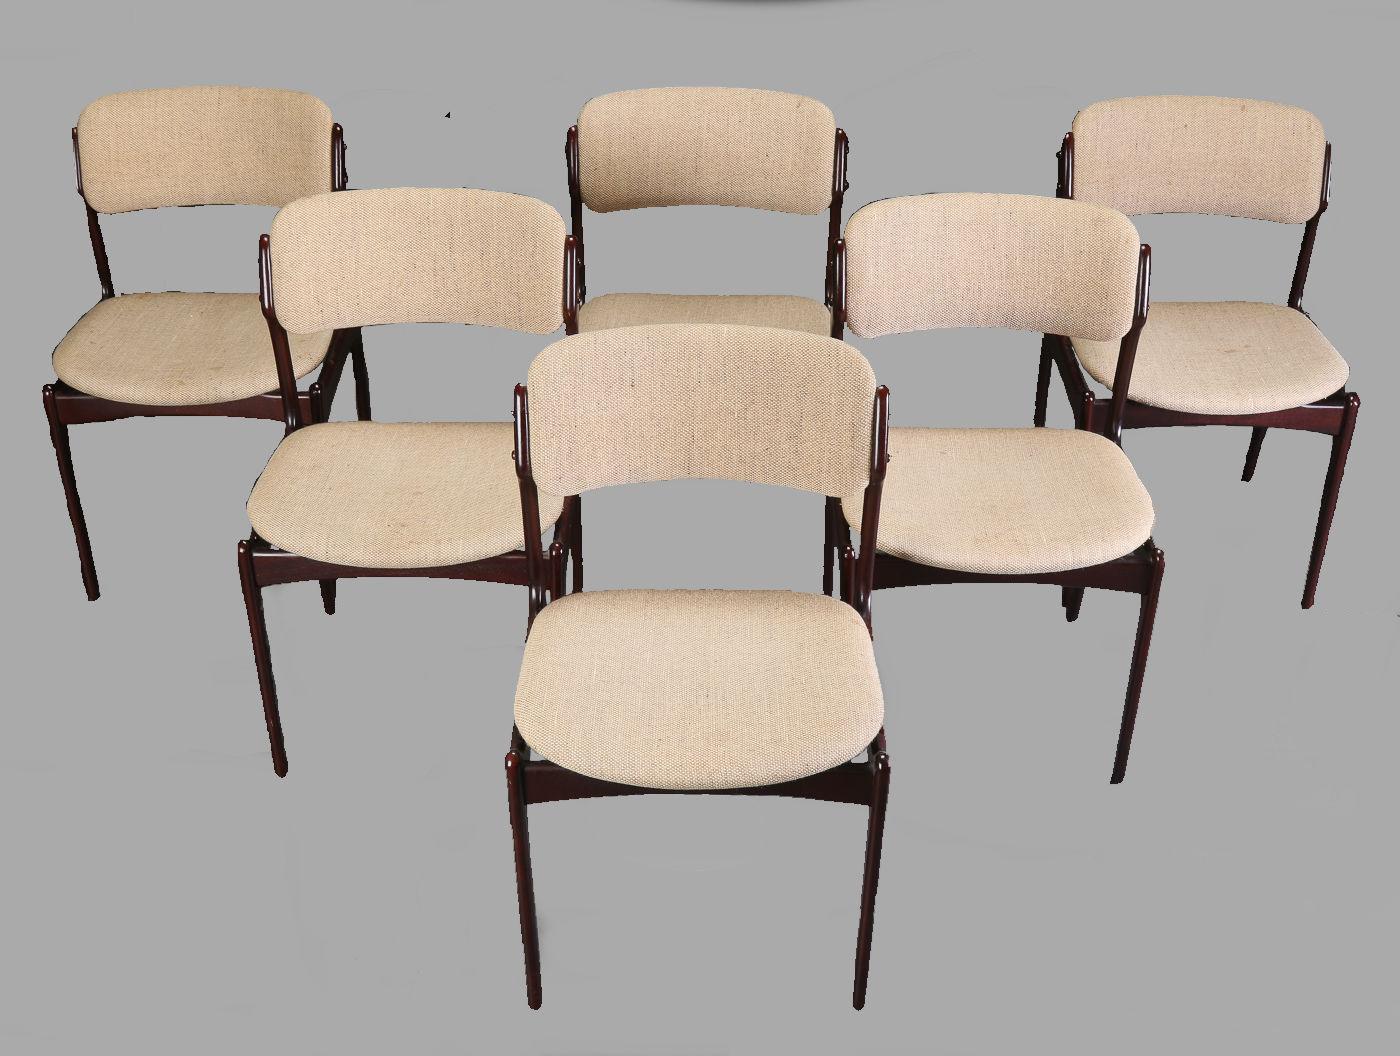 Set aus sechs Esszimmerstühlen aus gegerbter Eiche mit schwimmendem Sitz, entworfen von Erik Buch für Oddense Maskinsnedkeri.

Die Stühle haben eine einfache, solide Konstruktion mit eleganten Linien und einem bequemen Sitzgefühl auf dem schwebenden